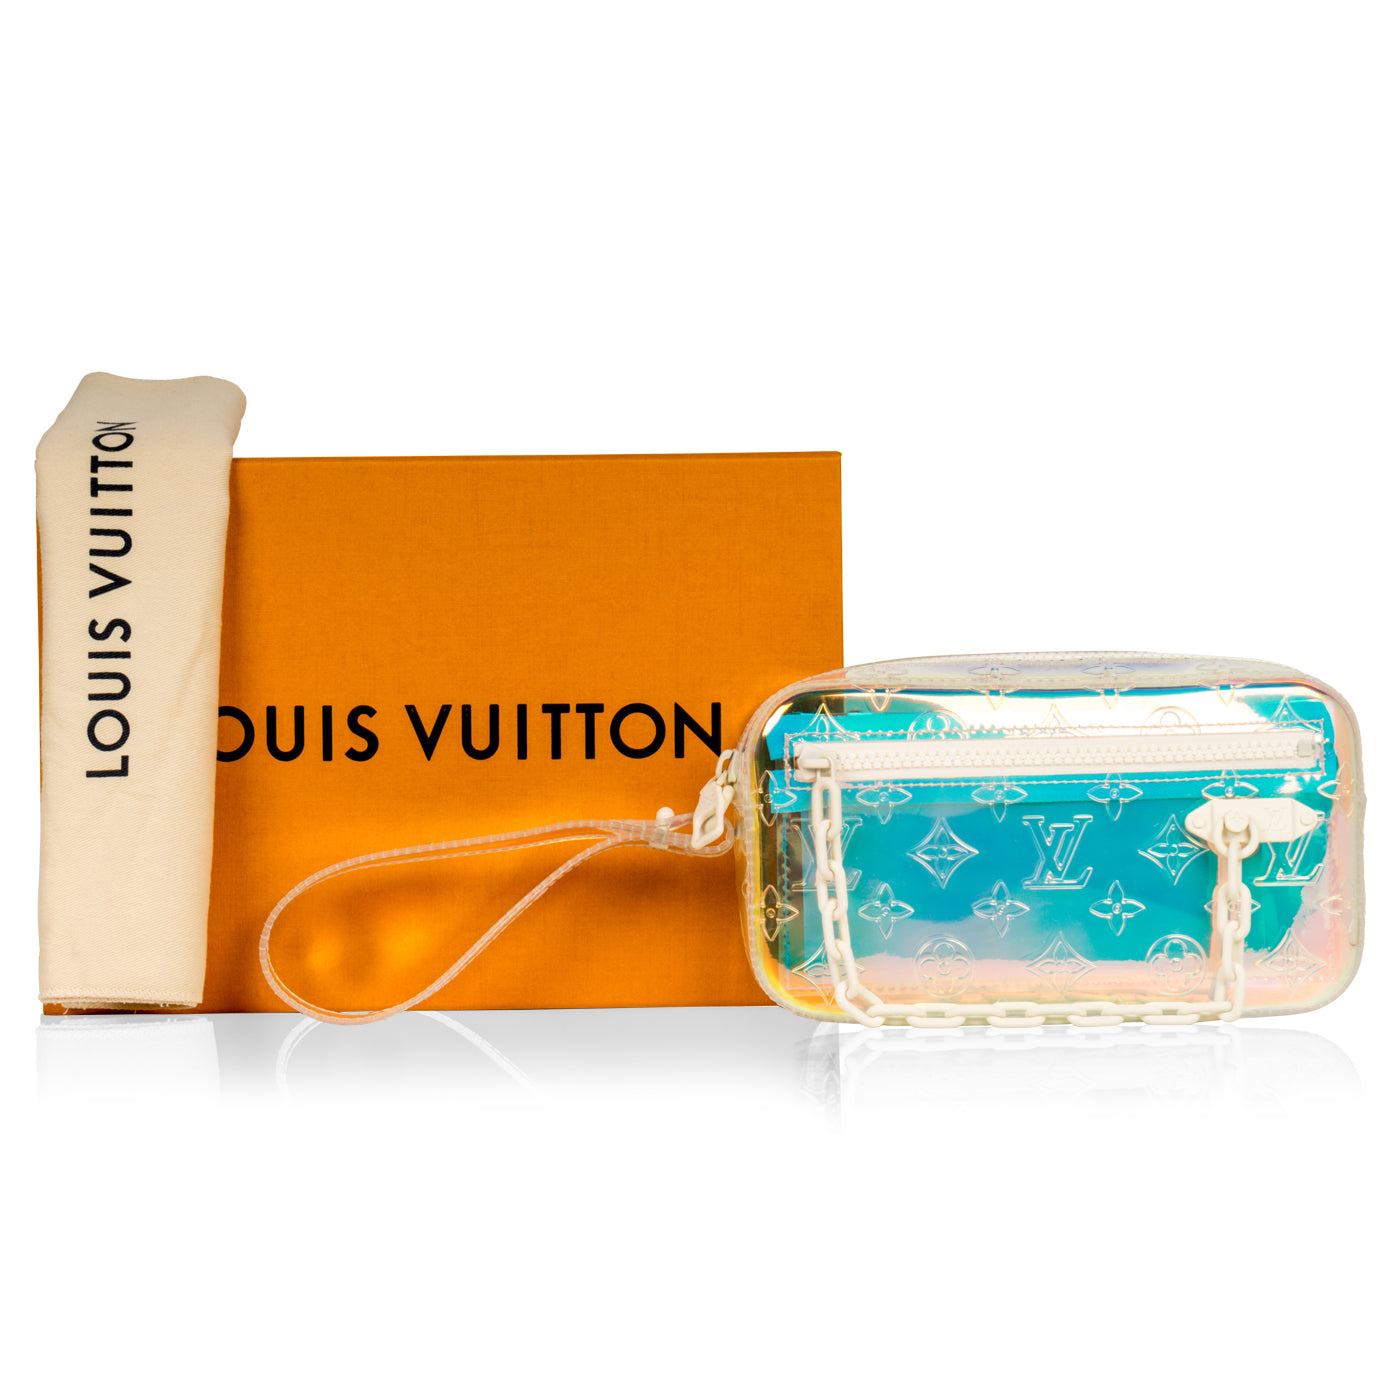 Louis Vuitton Pochette Rare Virgil Abloh Prism Volga 870977 Clear